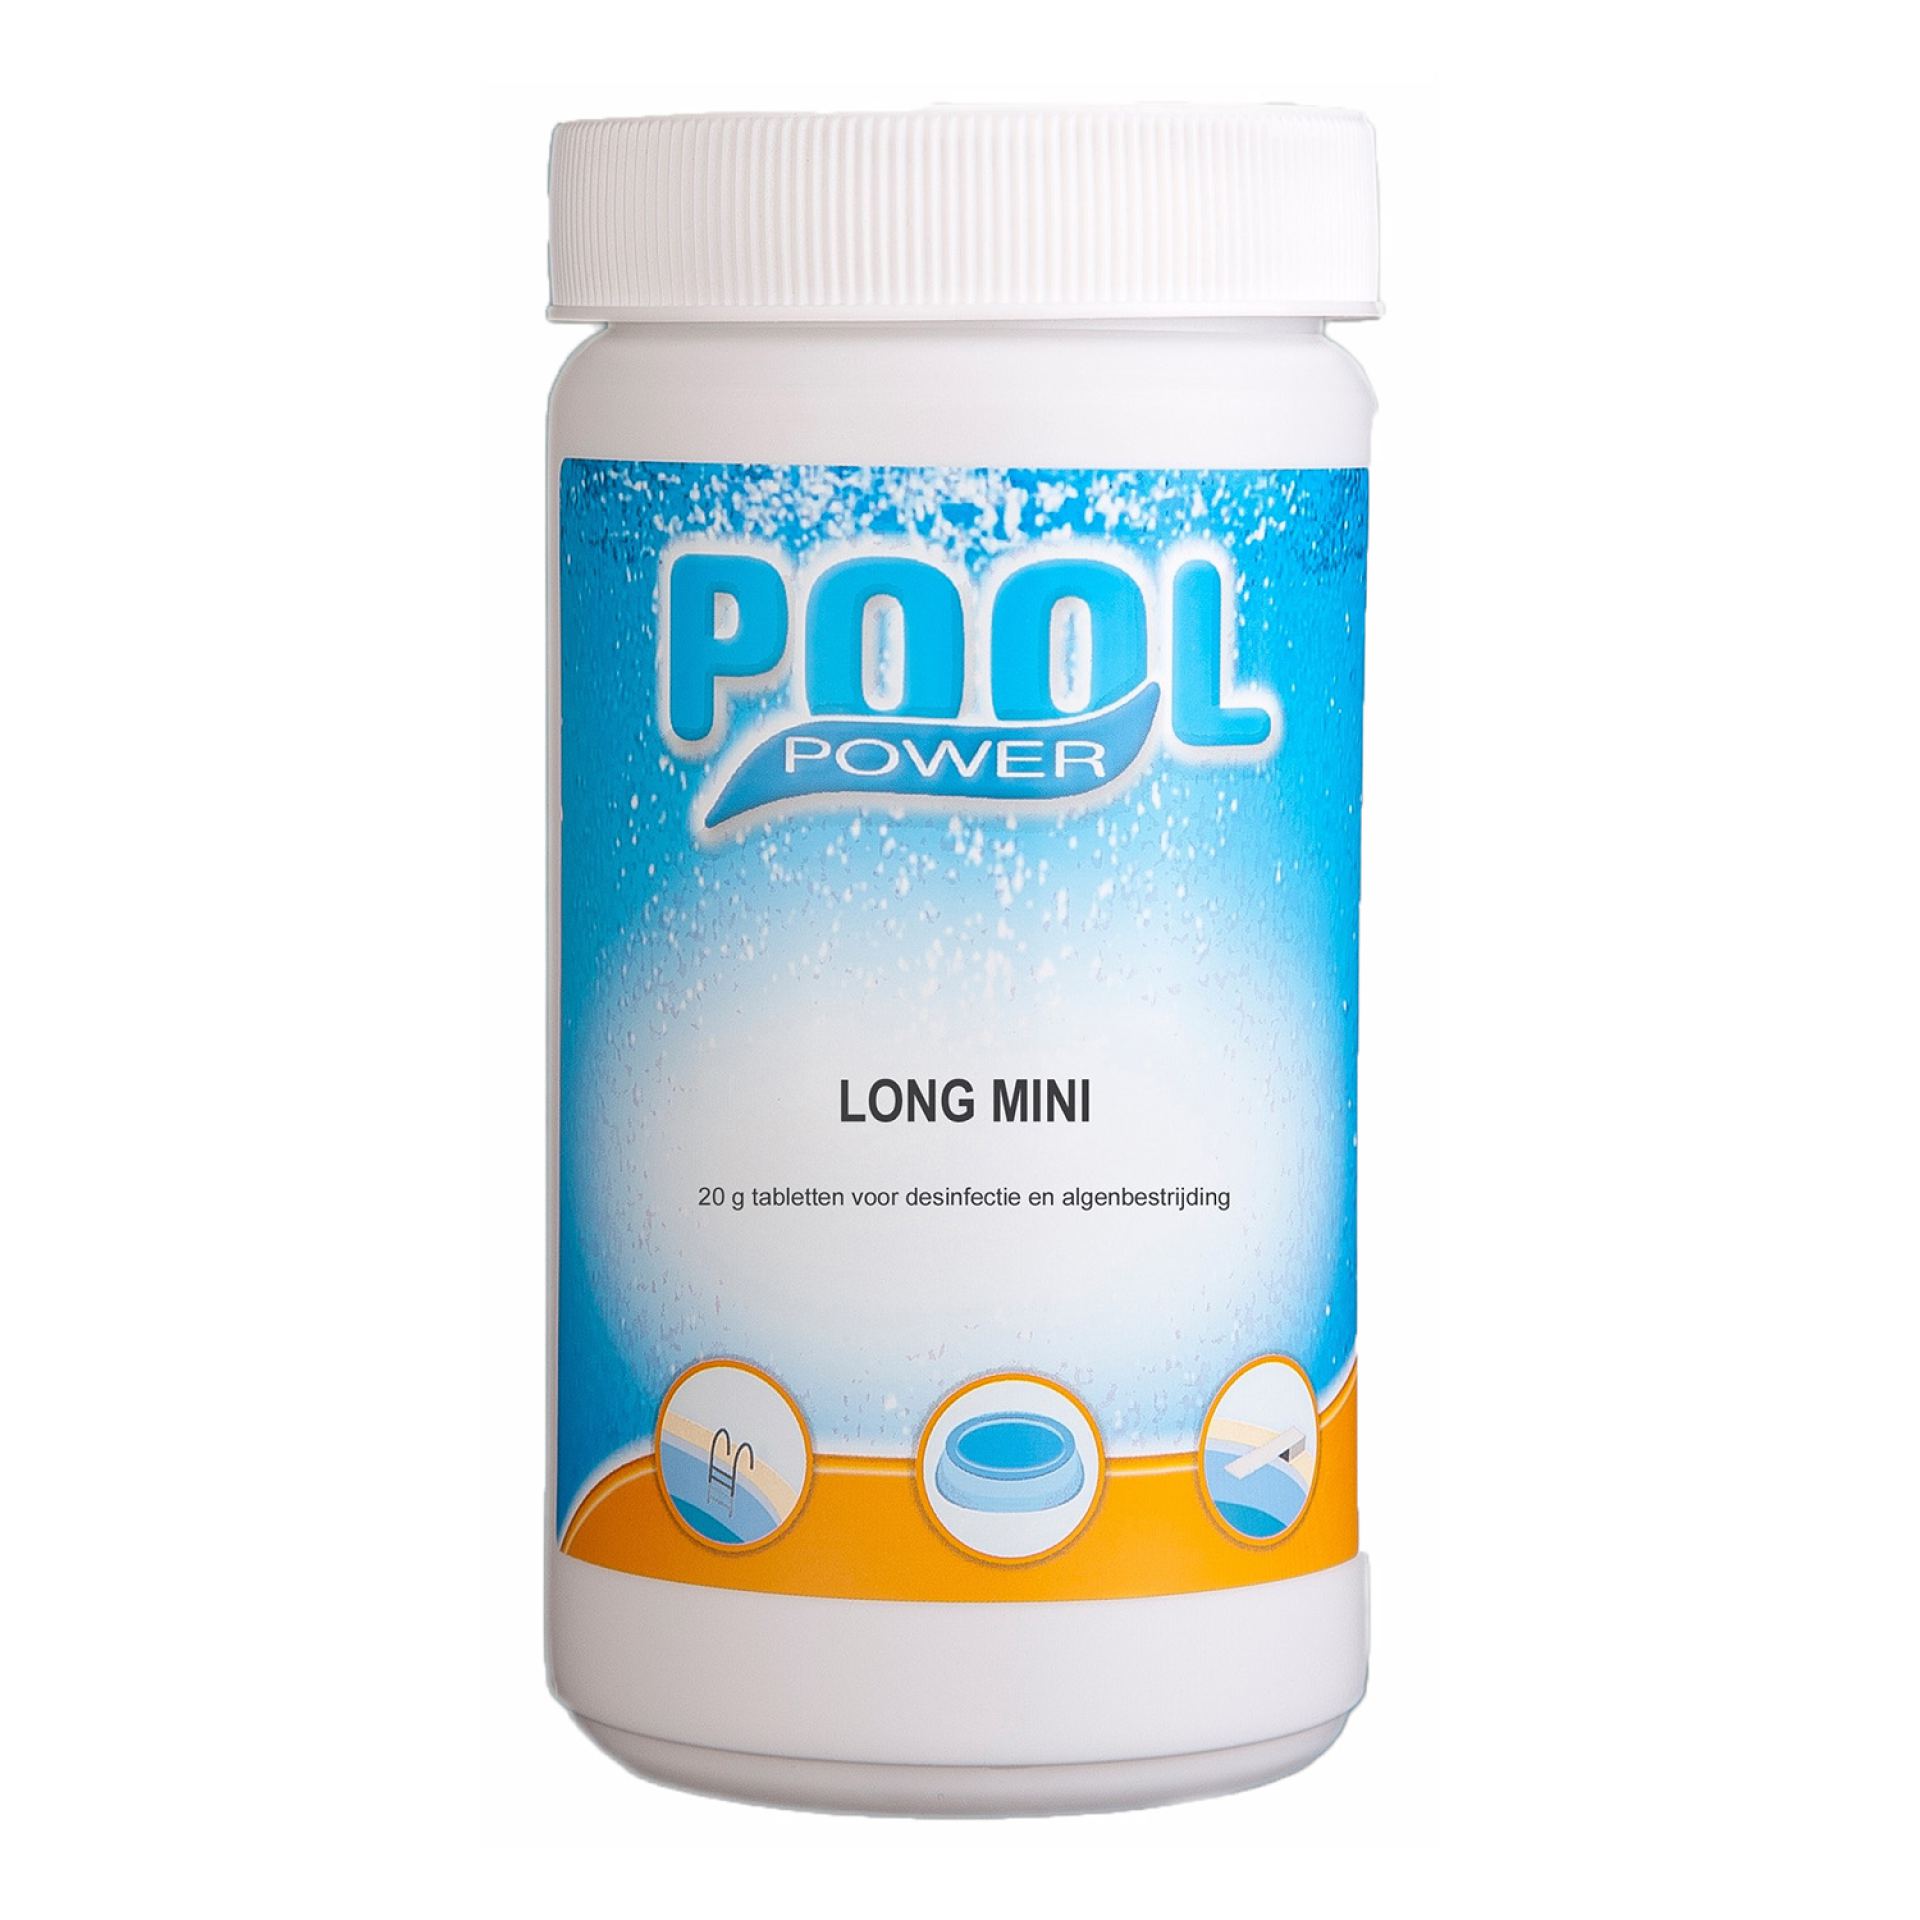 Pool power long mini chloortabletten